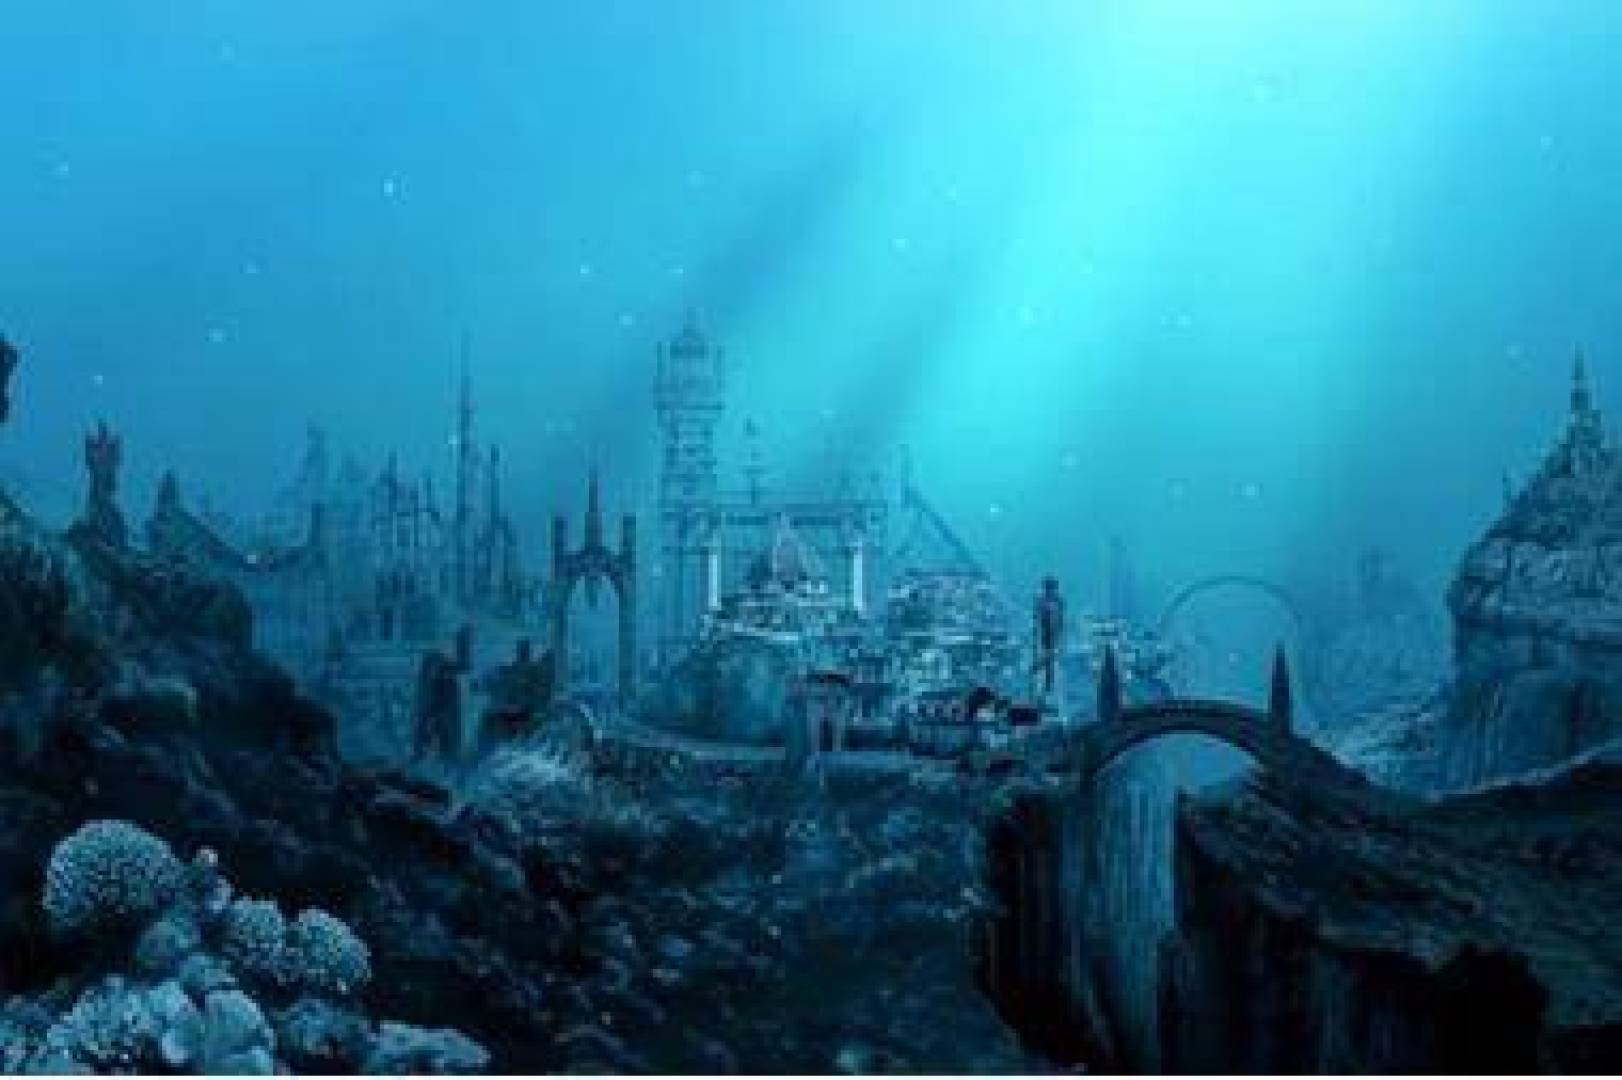 مدينة مفقودة تحت المحيط: عجائب الحياة في أعماق البحر